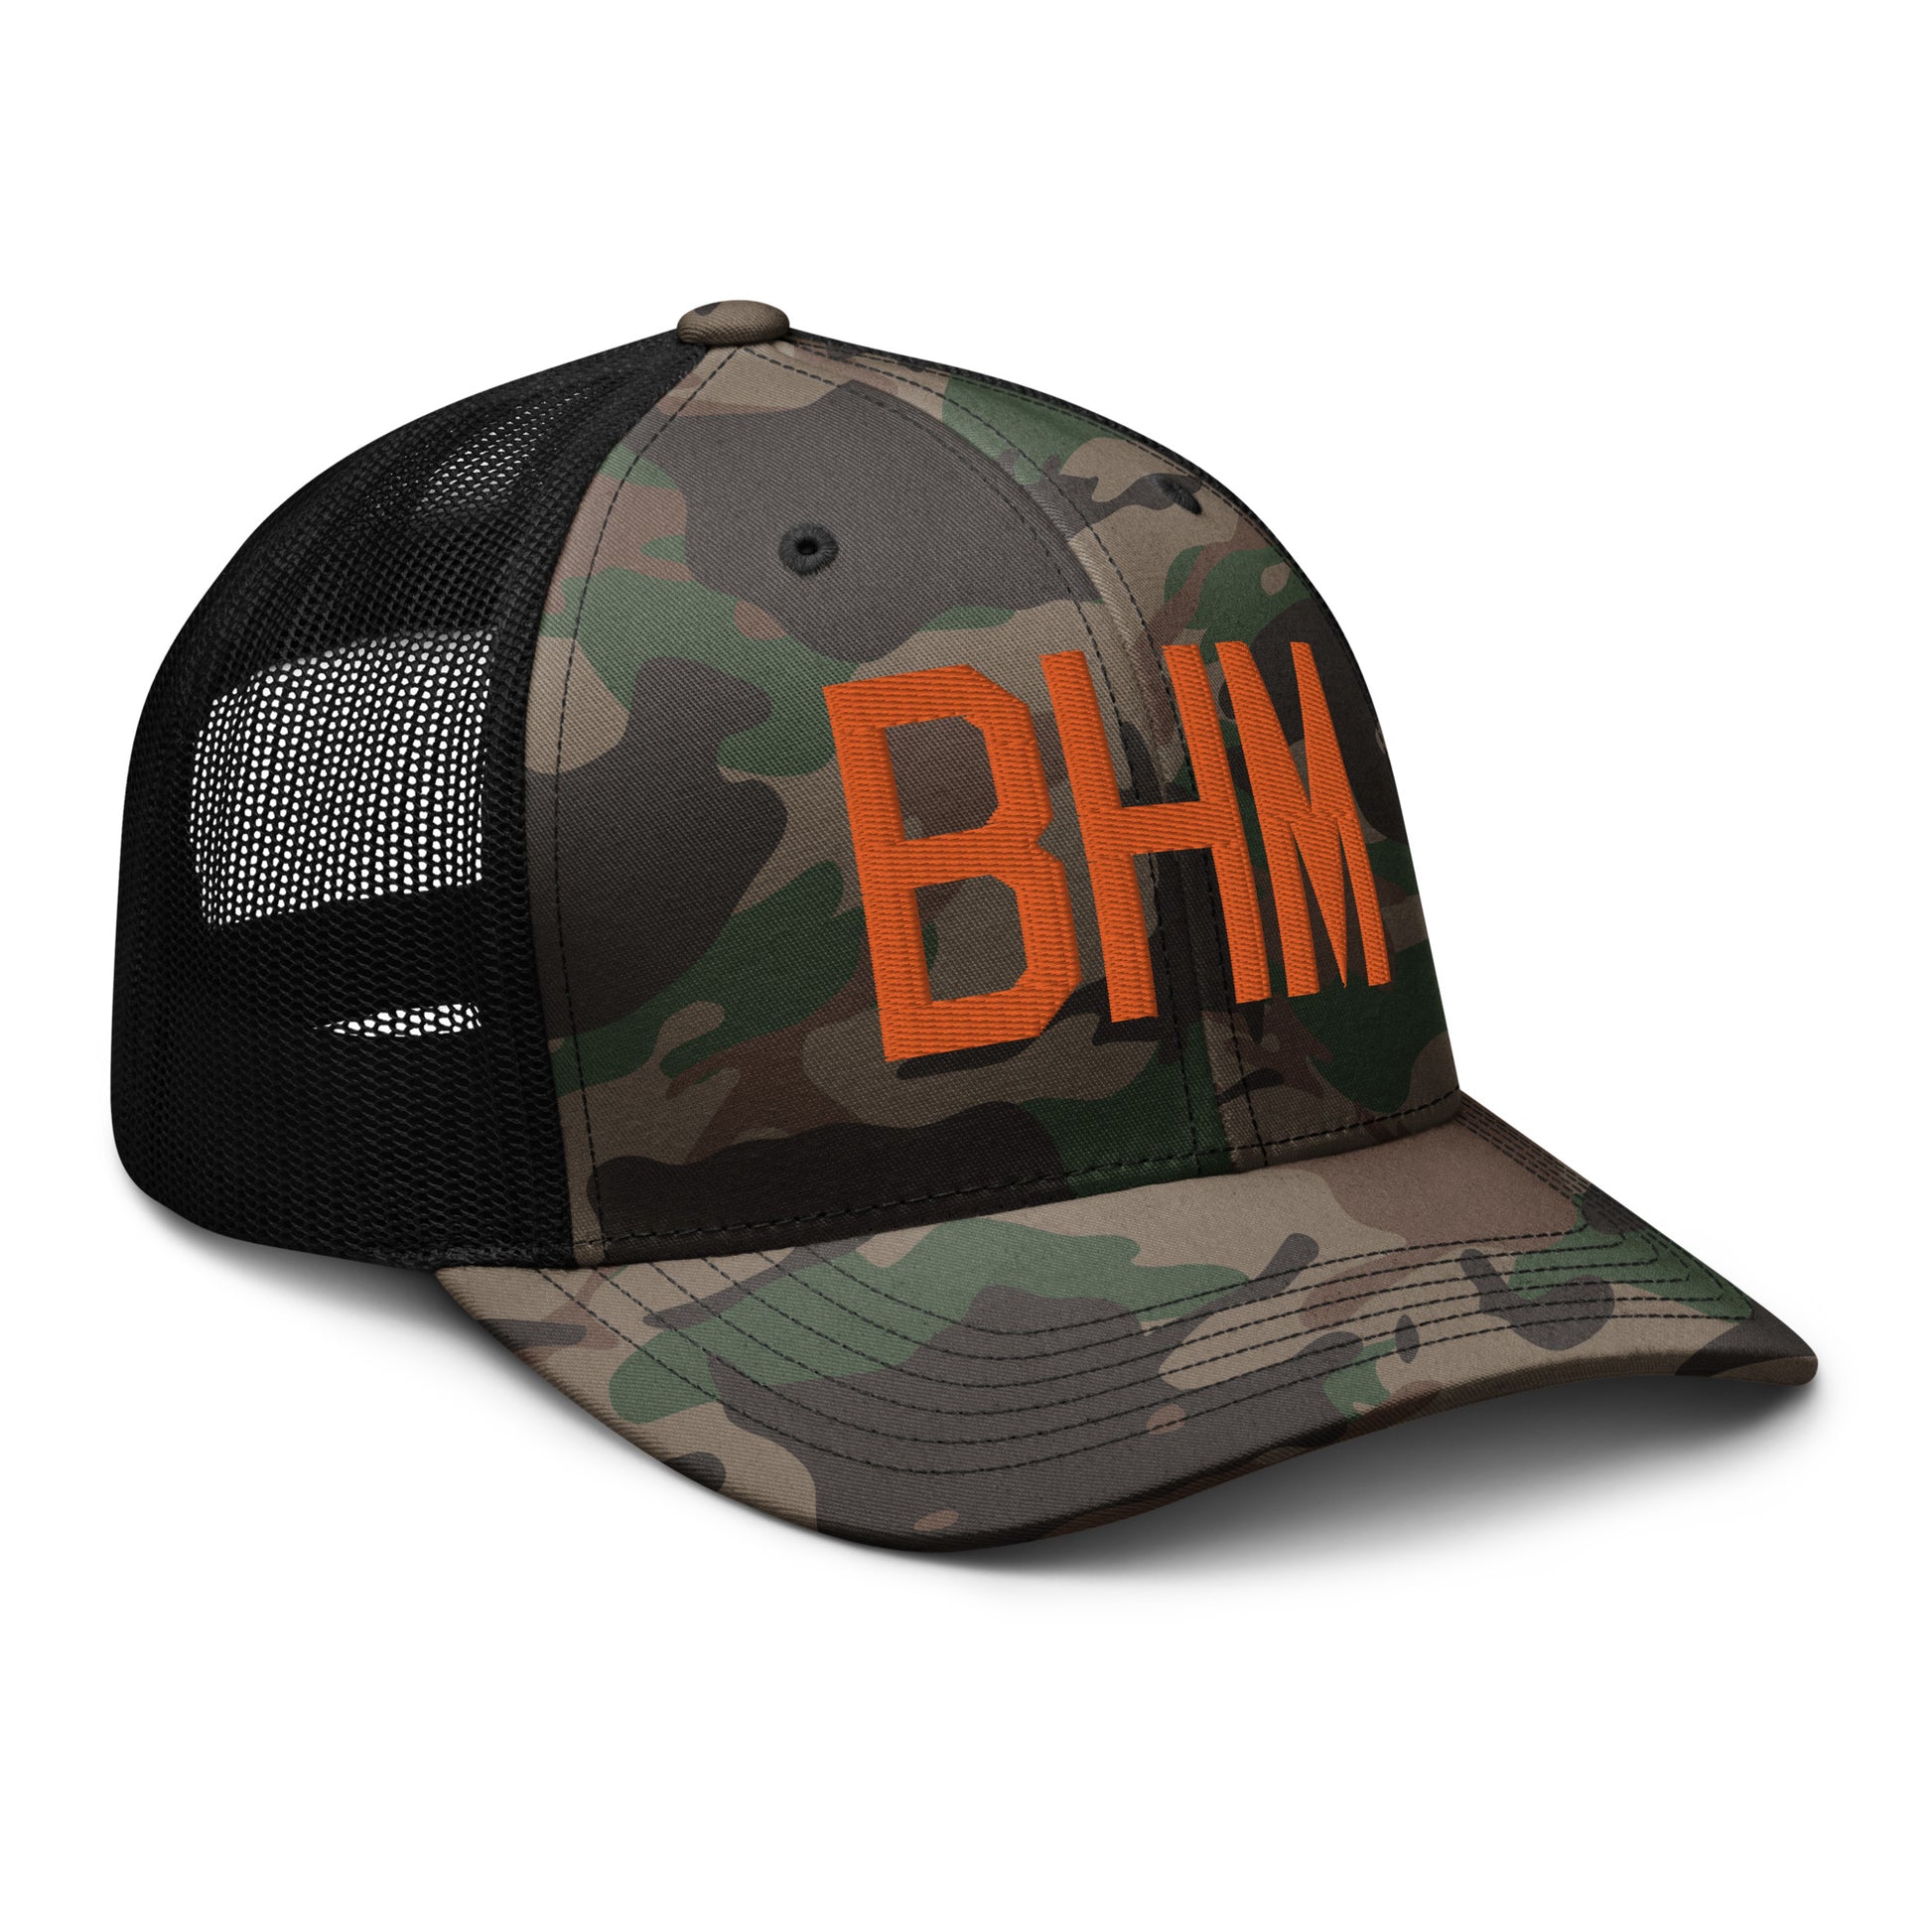 Airport Code Camouflage Trucker Hat - Orange • BHM Birmingham • YHM Designs - Image 12